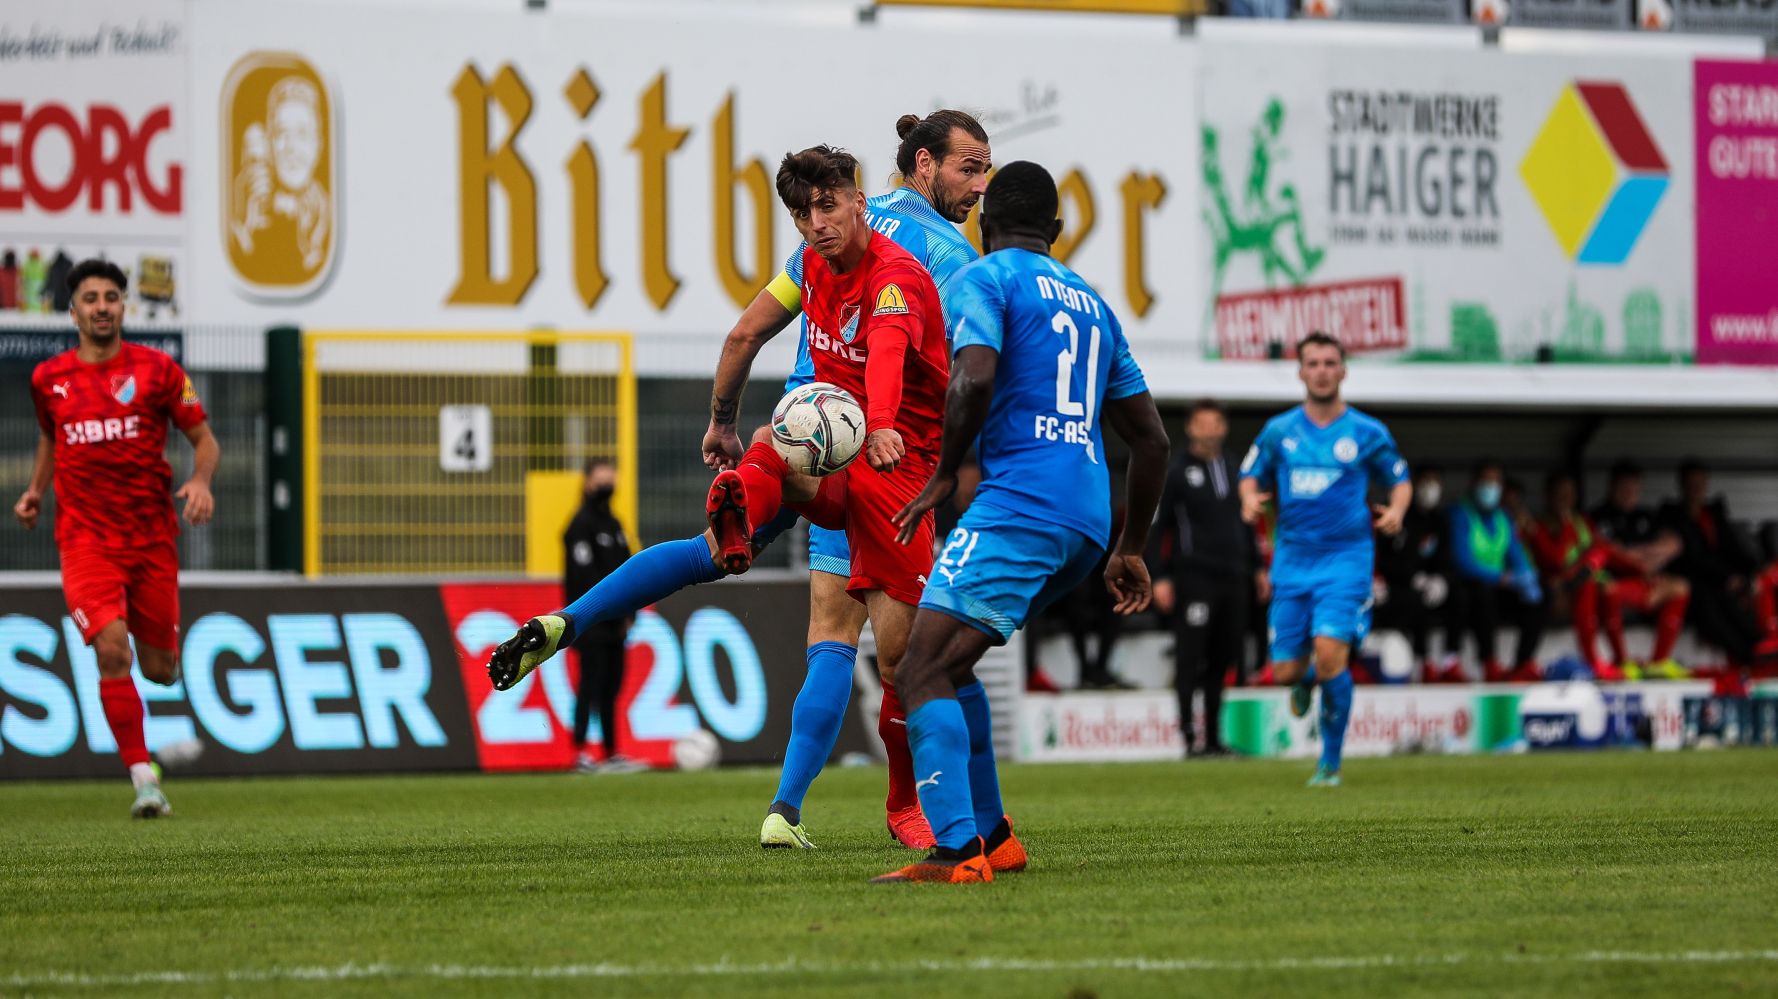 Enis Bytyqi vom TSV Steinbach Haiger trifft gegen den FC Astoria Walldorf